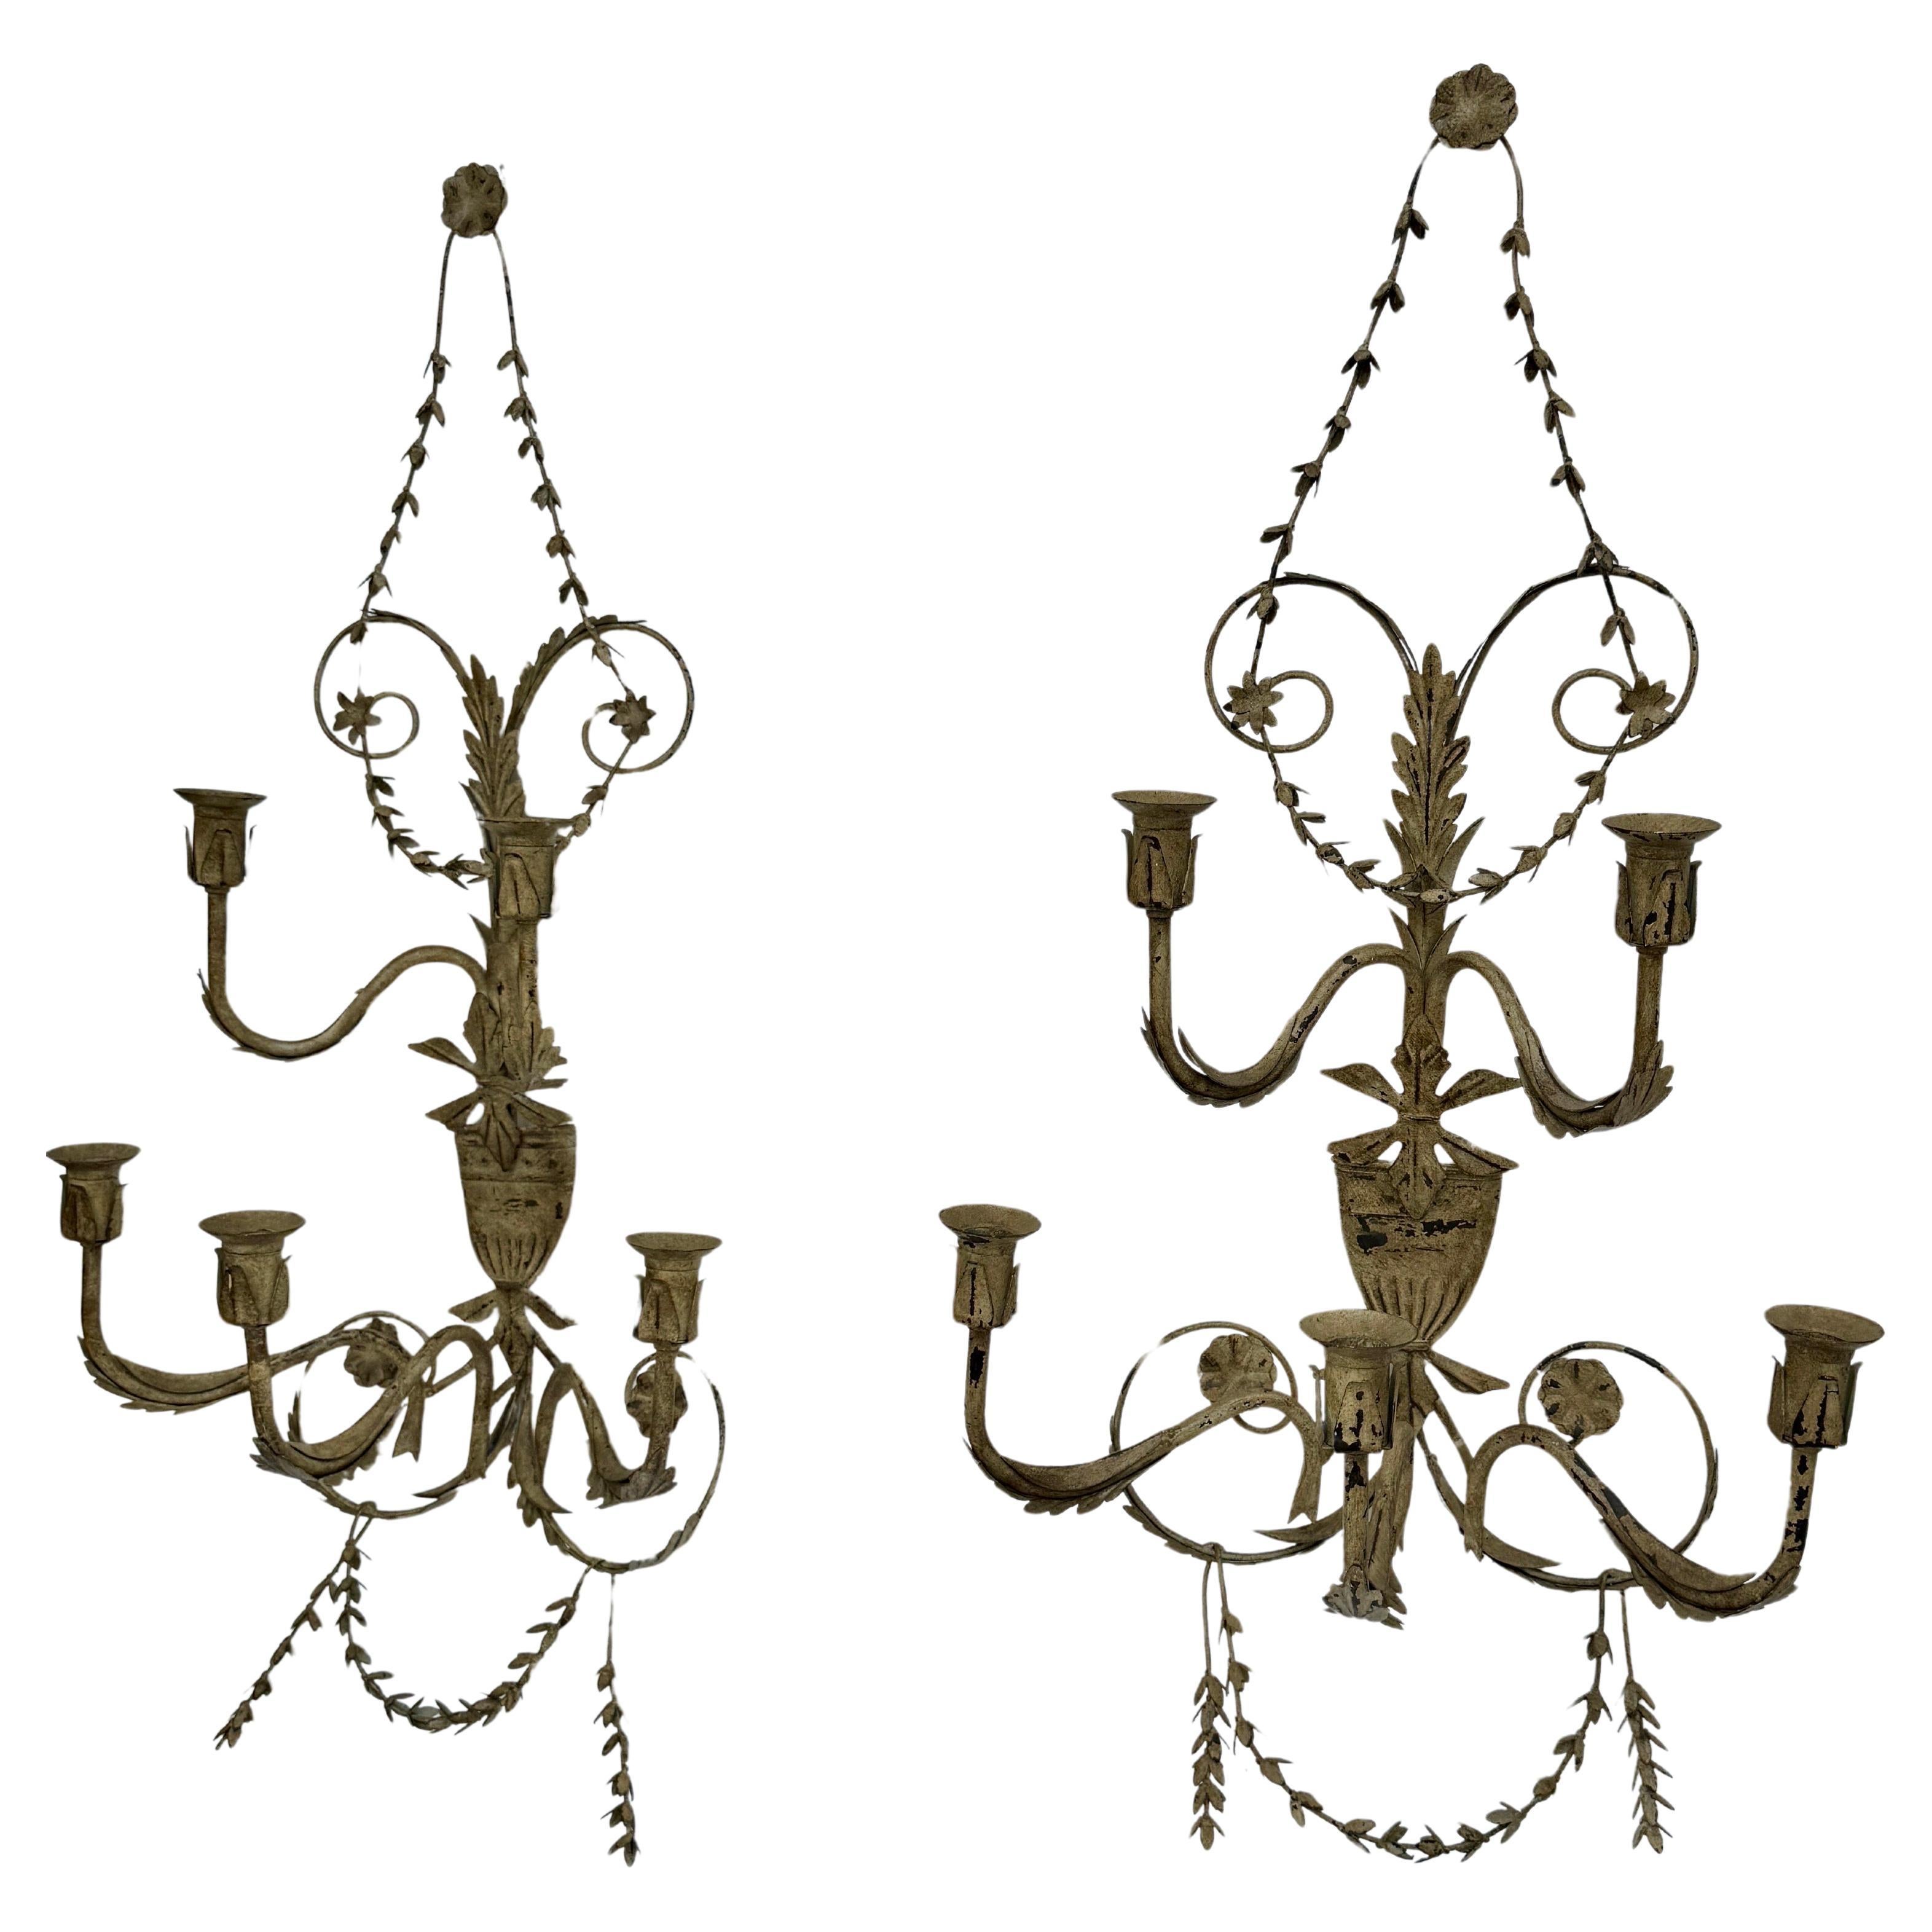 Dekorative Metall-Kerzen-Wandleuchter, Frankreich 

Beeindruckendes Kerzenleuchter-Paar, das jeweils 5 Kerzen aufnehmen kann. Dieses Set in einer neutralen Farbe ist ästhetisch ansprechend in ihrem Stil und Aufbau. Perfekt, um einen Flur, ein